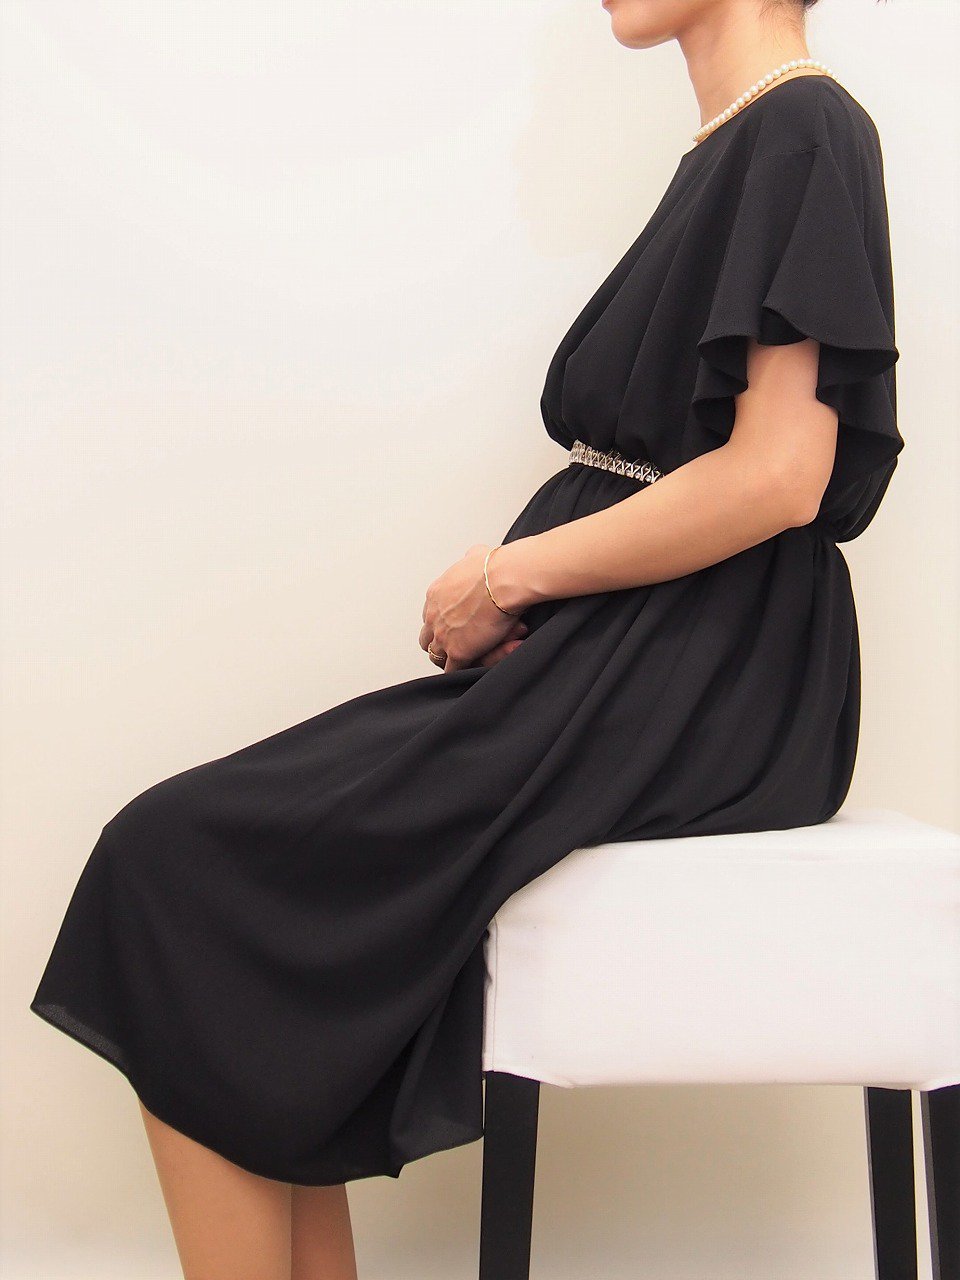 マタニティ用レンタルドレス,妊娠7ヶ月,ゆったりドレス,座り